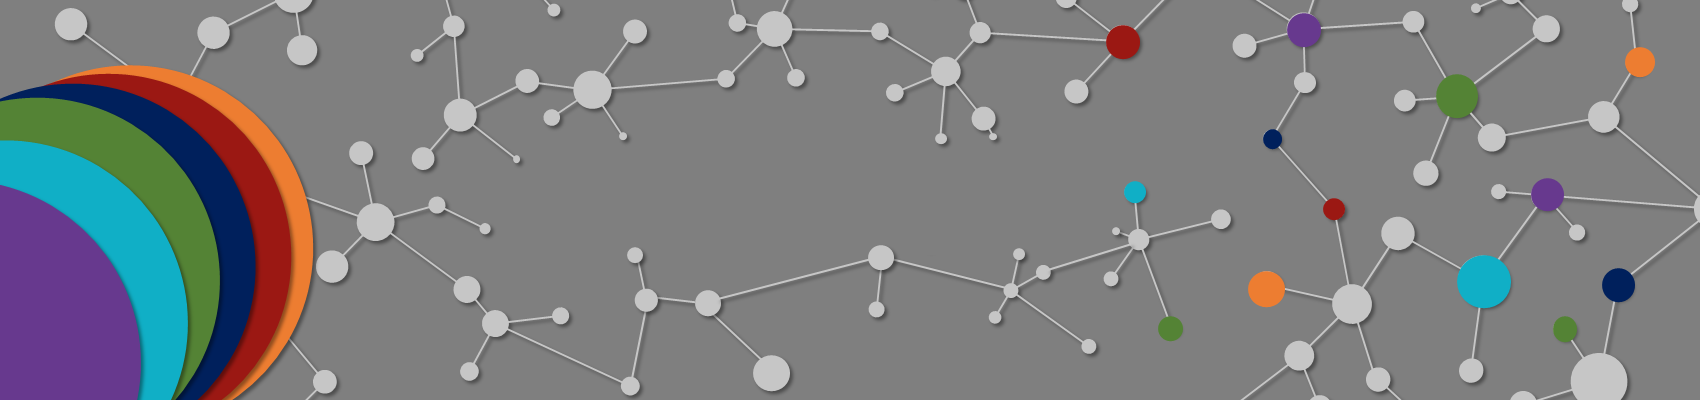 una rete stilizzata di atomi grigi con alcune parti colorate